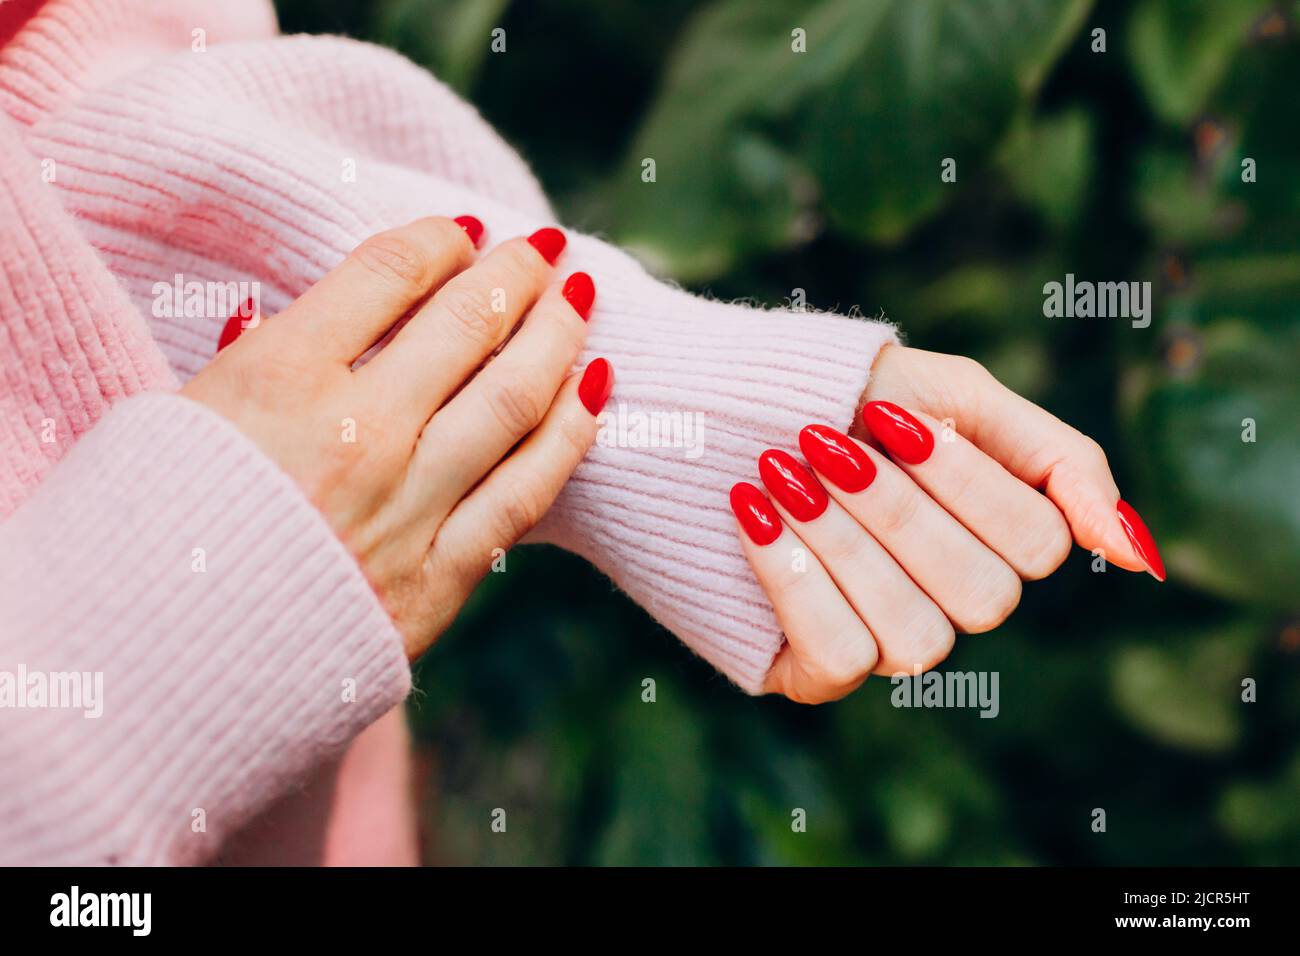 Mani femminili con unghie rosse e maglione rosa di lana su sfondo verde. Manicure rossa, closeup.к Foto Stock